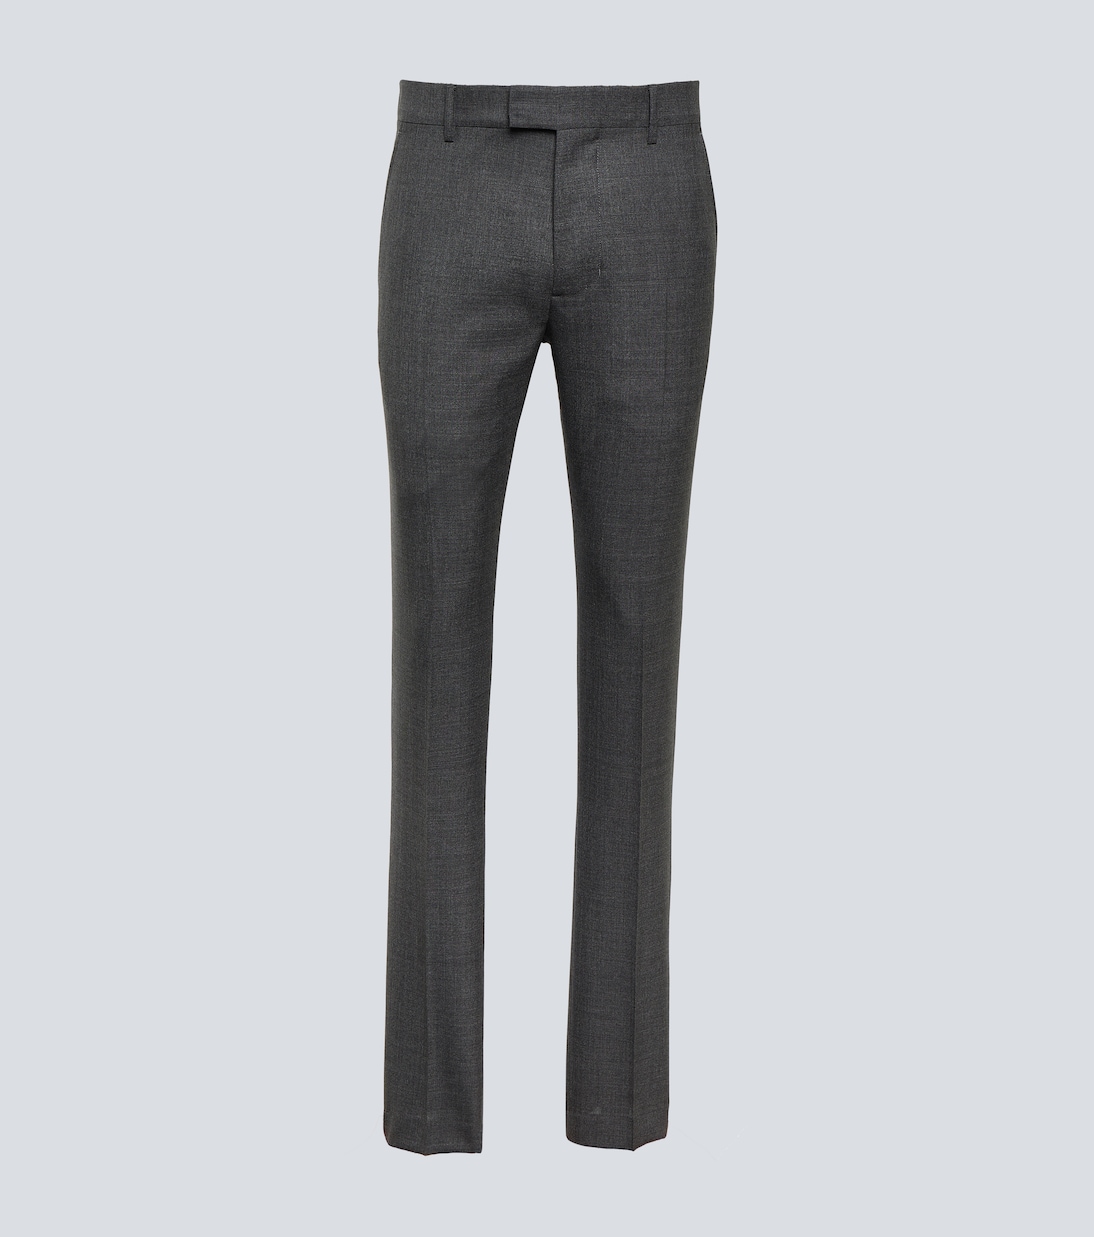 Узкие брюки из натуральной шерсти Ami Paris, серый узкие брюки из натуральной шерсти ami paris серый